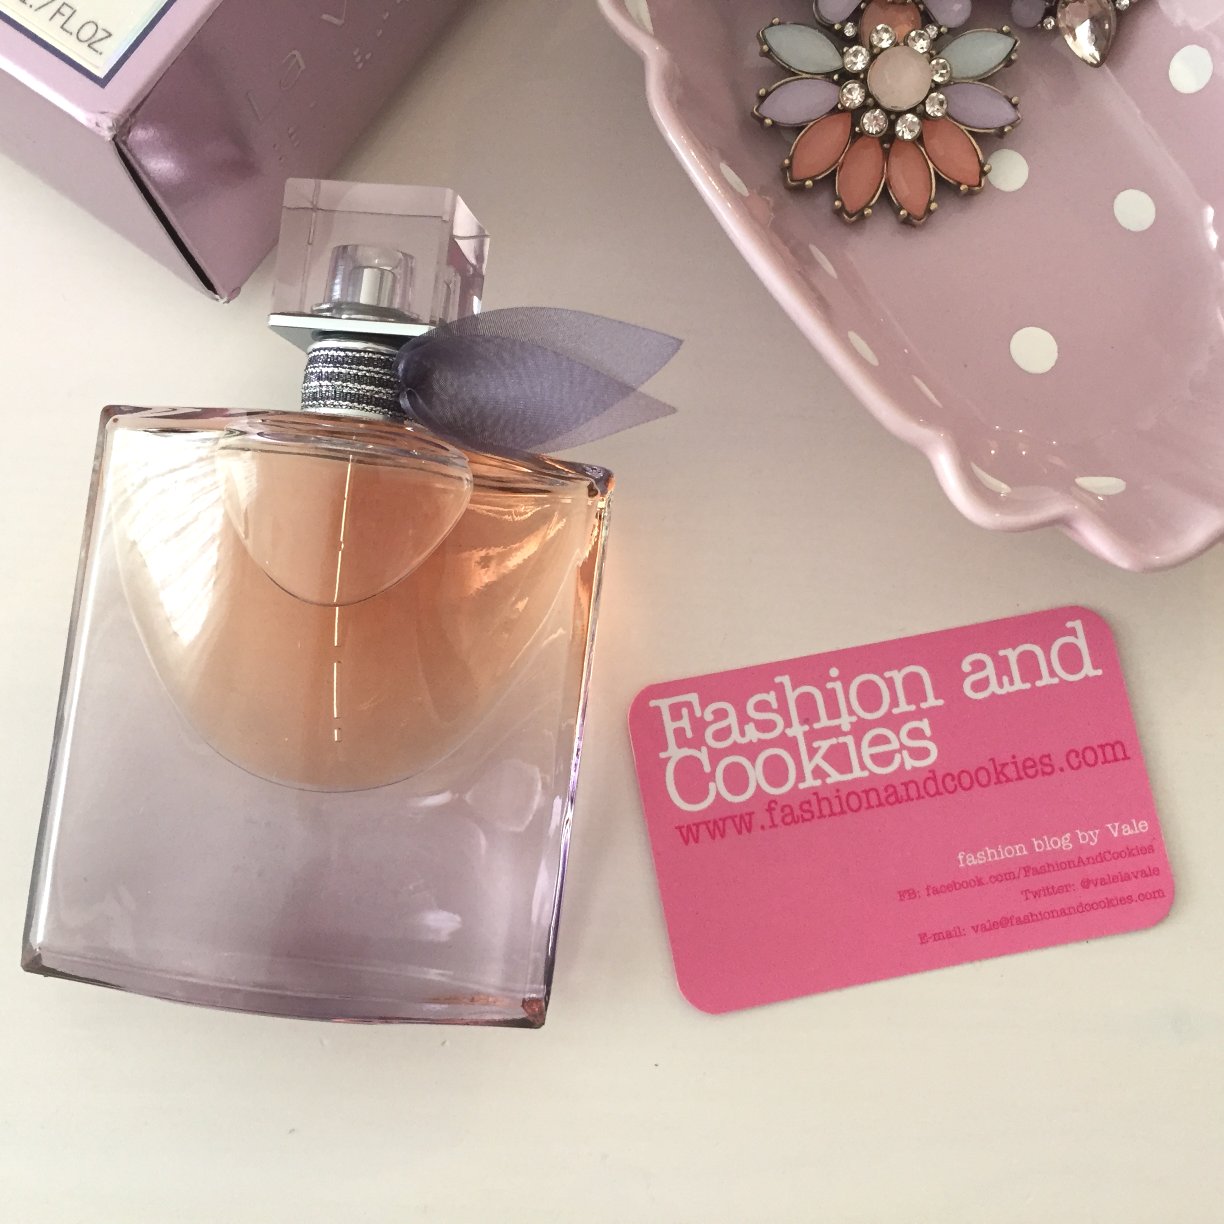 Lancôme La Vie Est Belle L'eau de parfum intense review on Fashion and Cookies beauty and fashion blog 